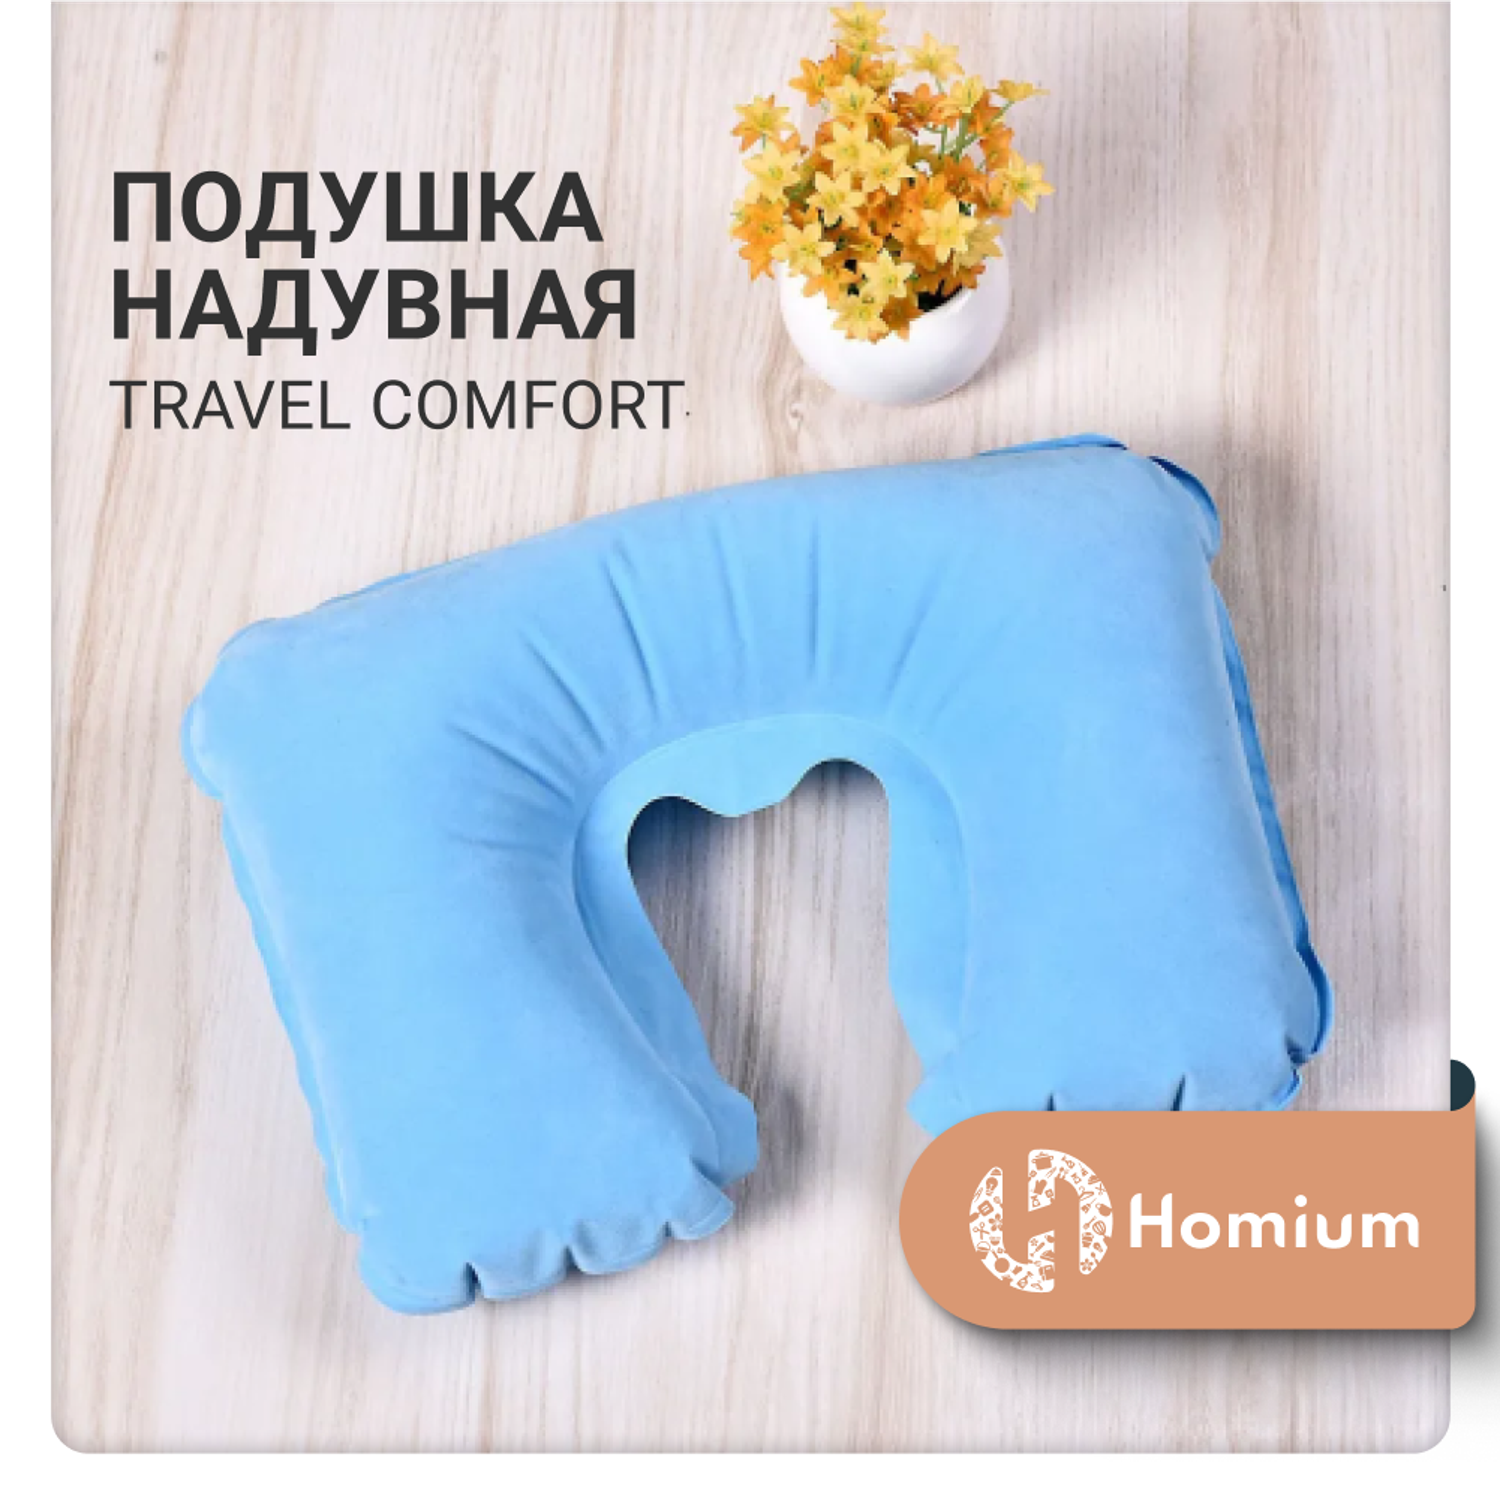 Подушка надувная ZDK Homium Travel Comfort дорожная цвет голубой - фото 2